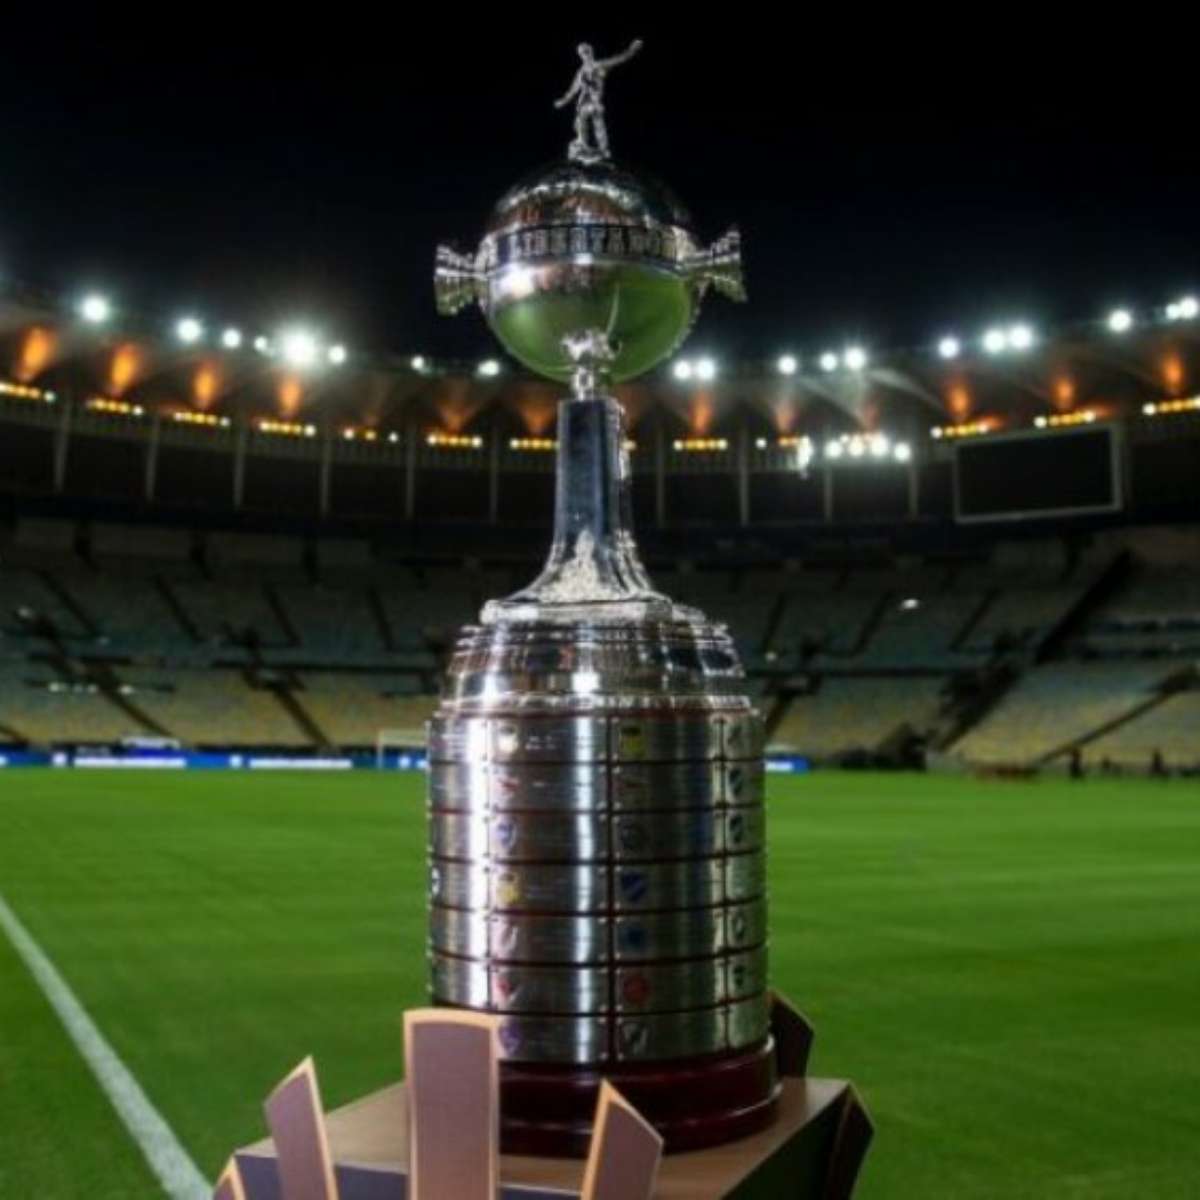 Mais uma vitória: SBT supera Globo e irá transmitir a Champions League